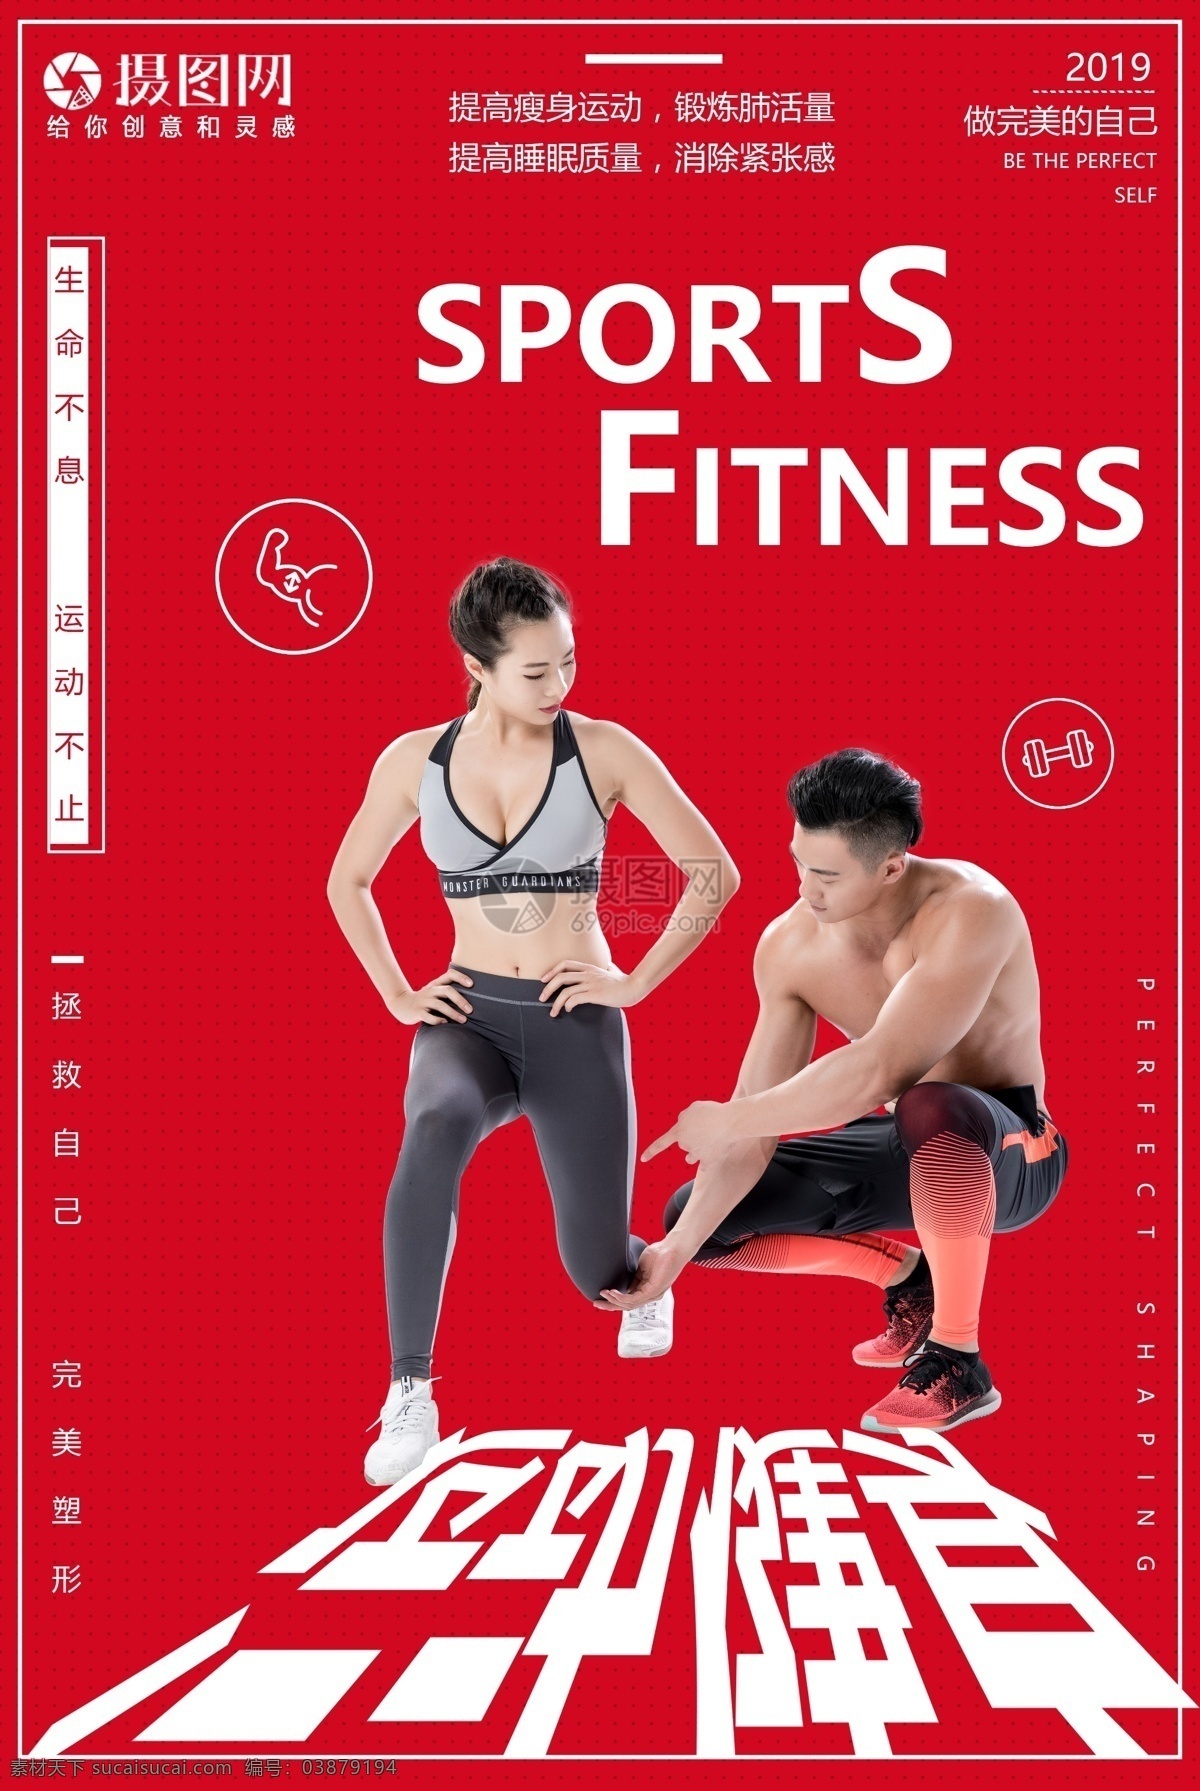 运动健身海报 运动 健身 锻炼 塑性 减脂 海报 有氧运动 塑身 瘦身 身材 体形 私教 教练 肌肉 健身房 健身俱乐部 生命在于运动 猛男训练 健身运动海报